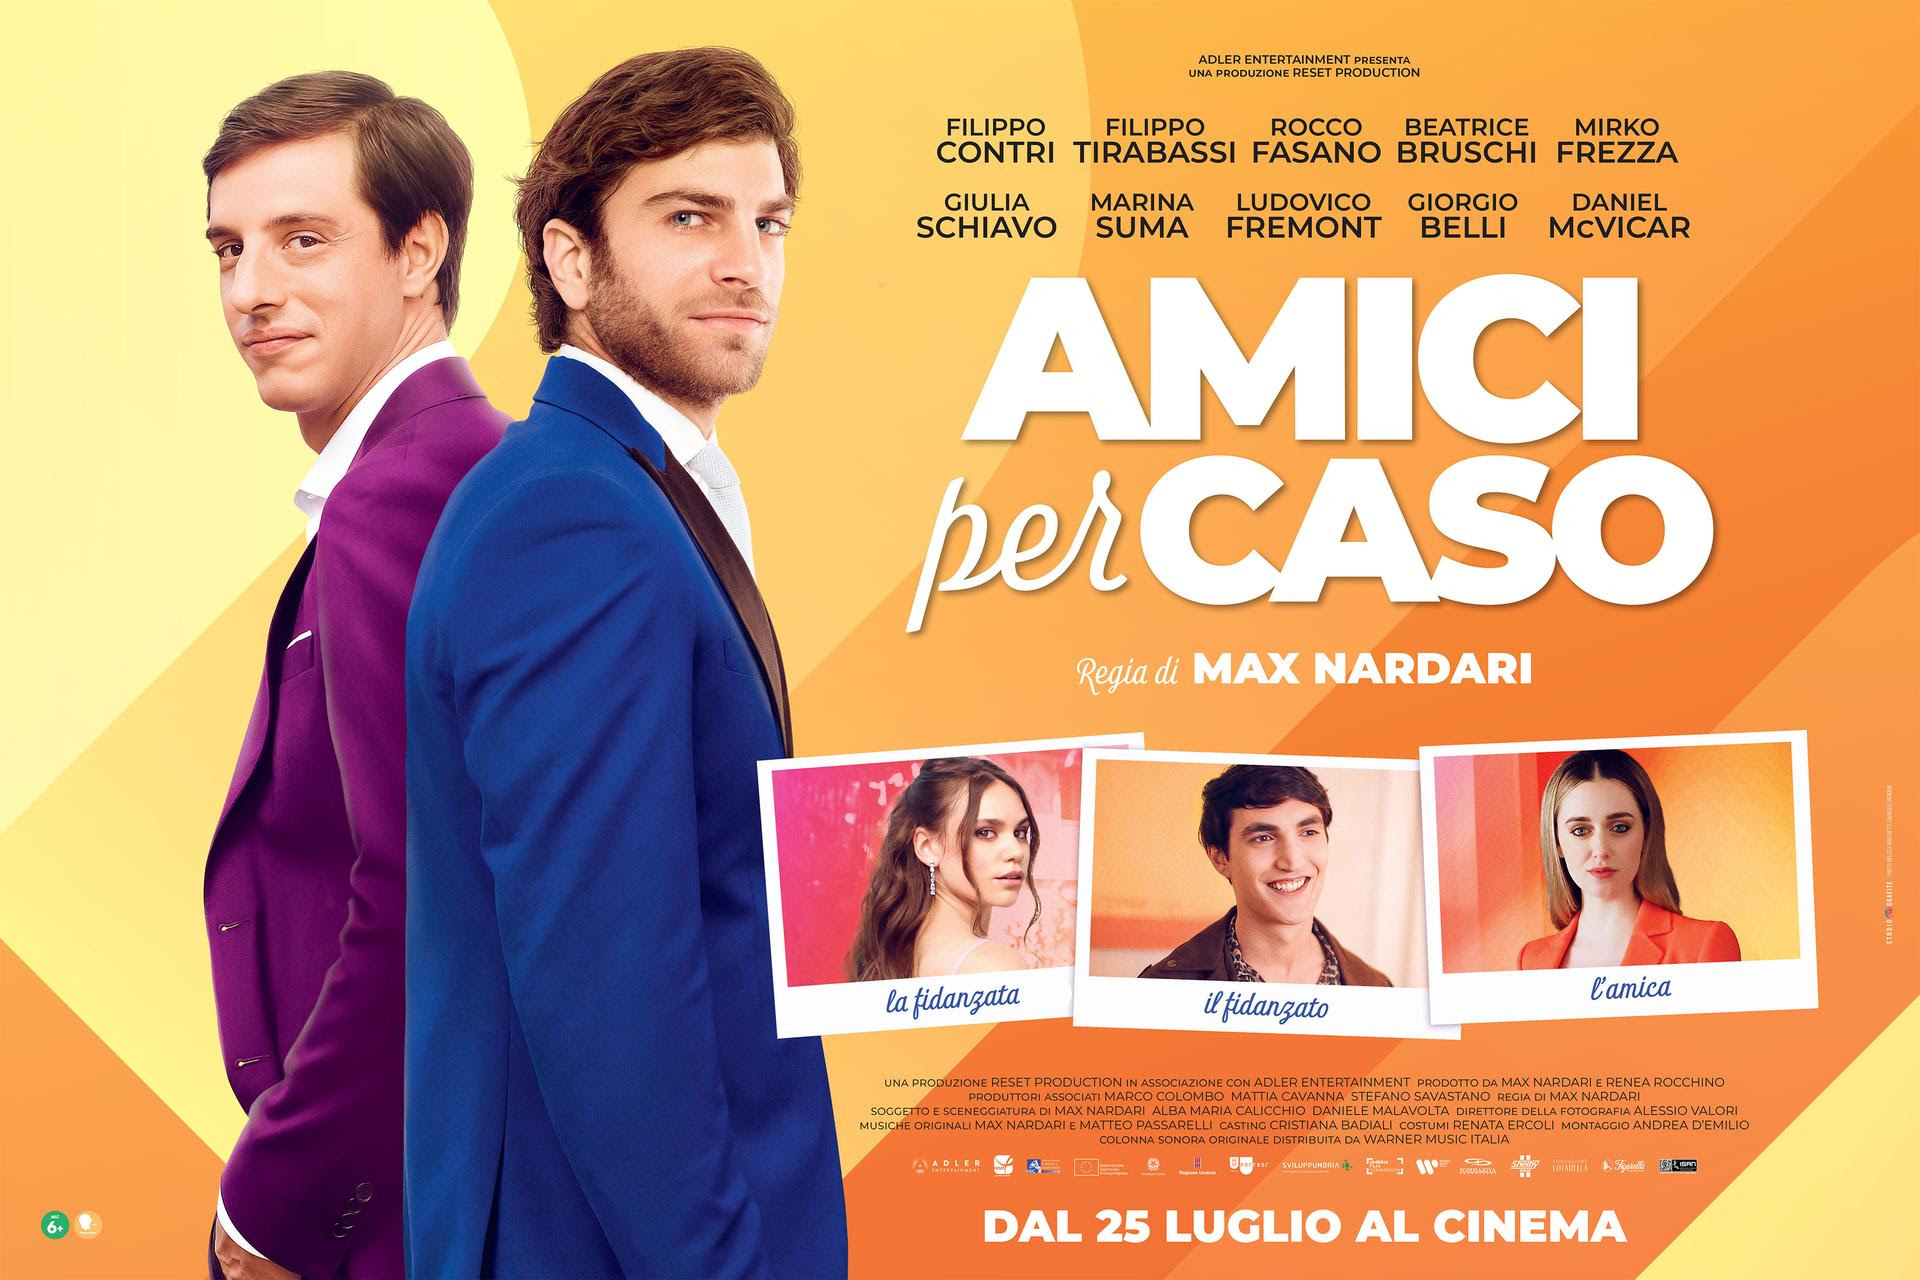 Il trailer di AMICI PER CASO al cinema dal 25 luglio